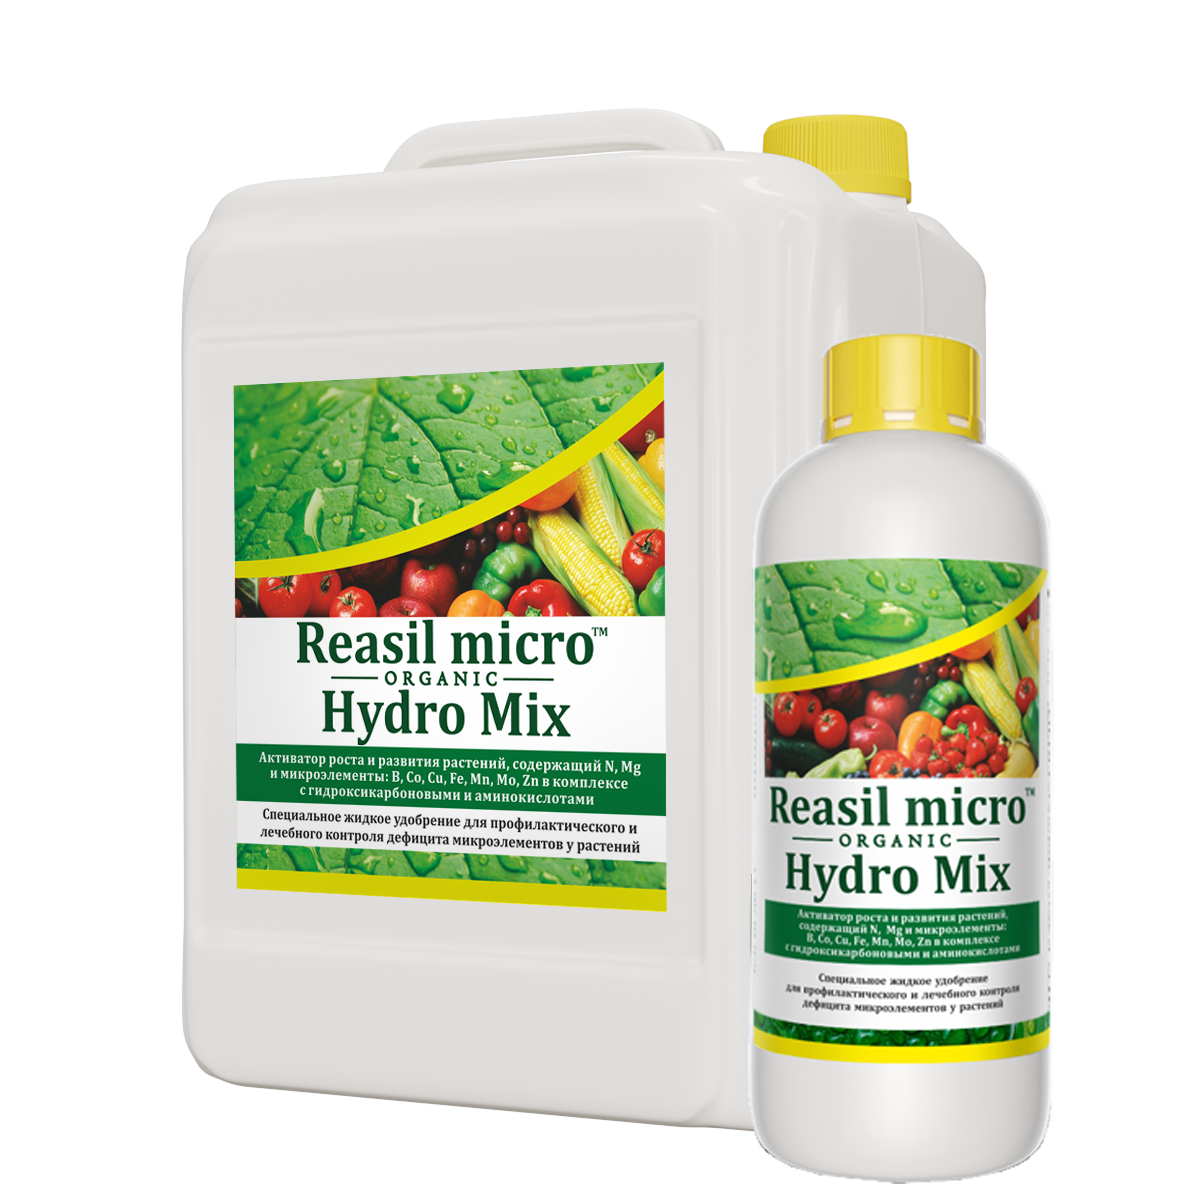 Reasil Micro Hydro Mix. Удобрения для растений. Средства защиты растений. Подкормка растений удобрениями.